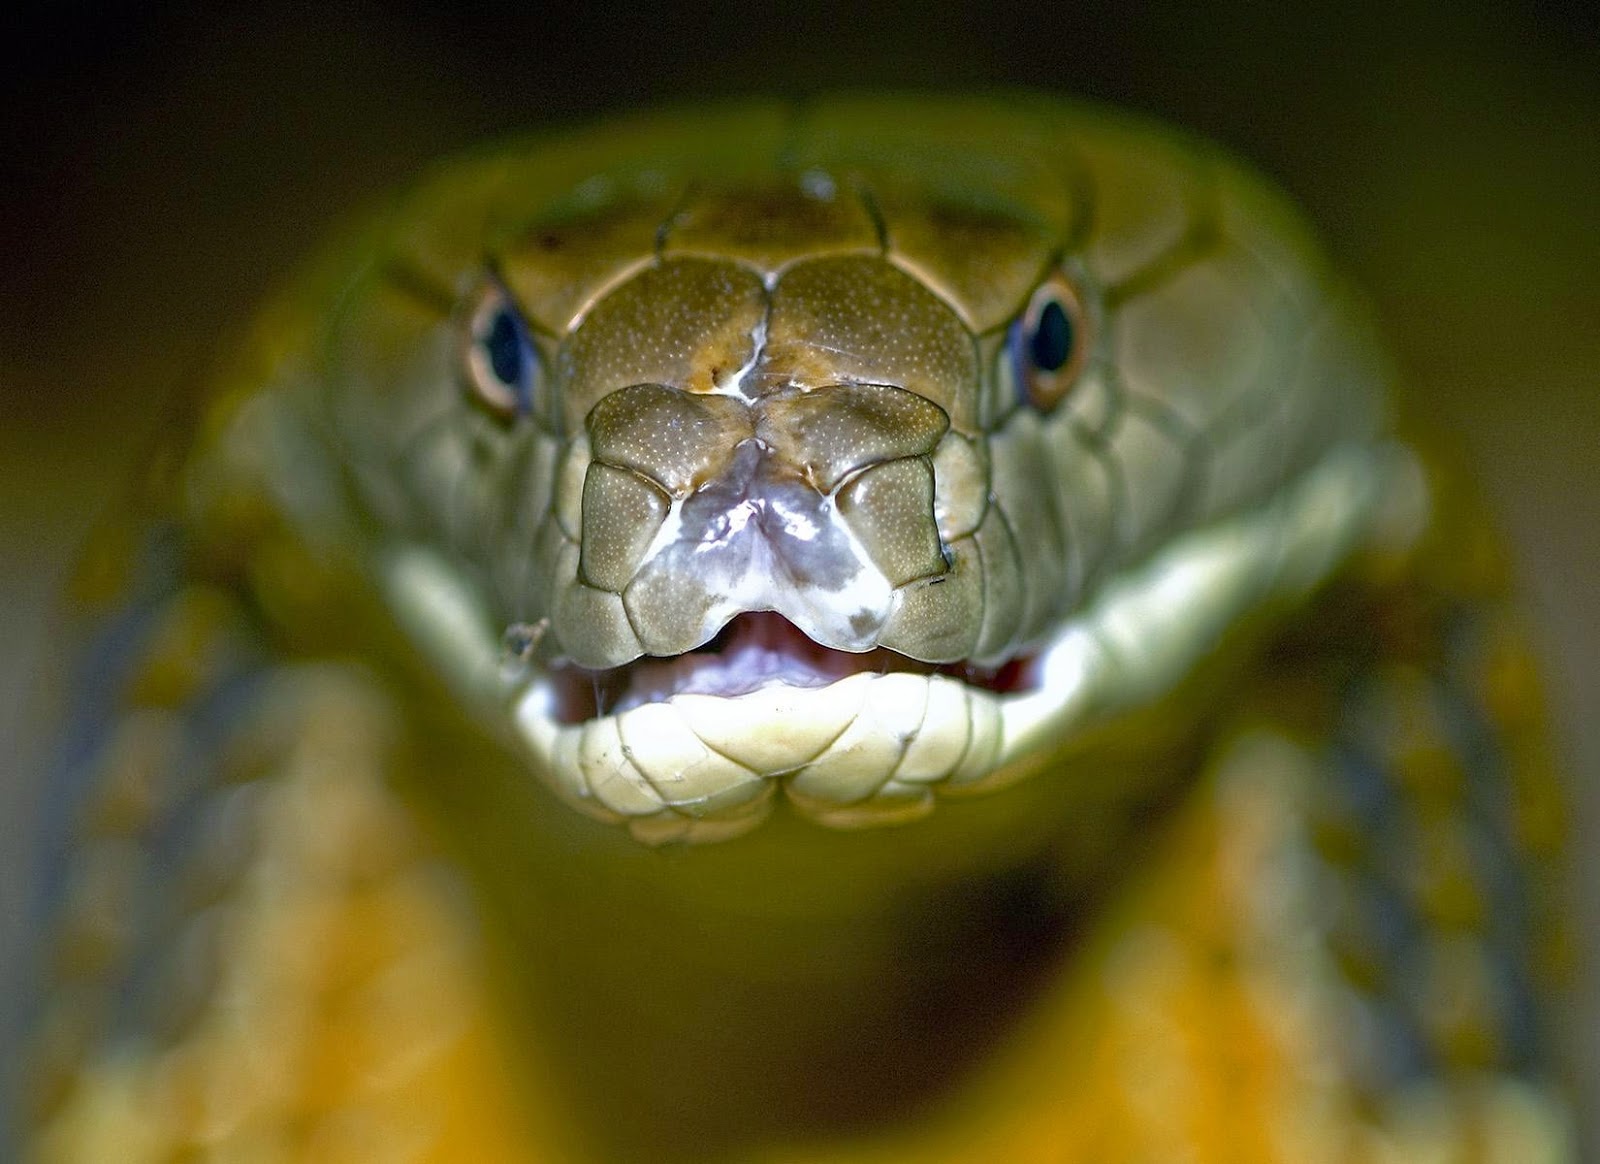 kobra tapete,reptil,schlange,schlange,elapidae,python familie